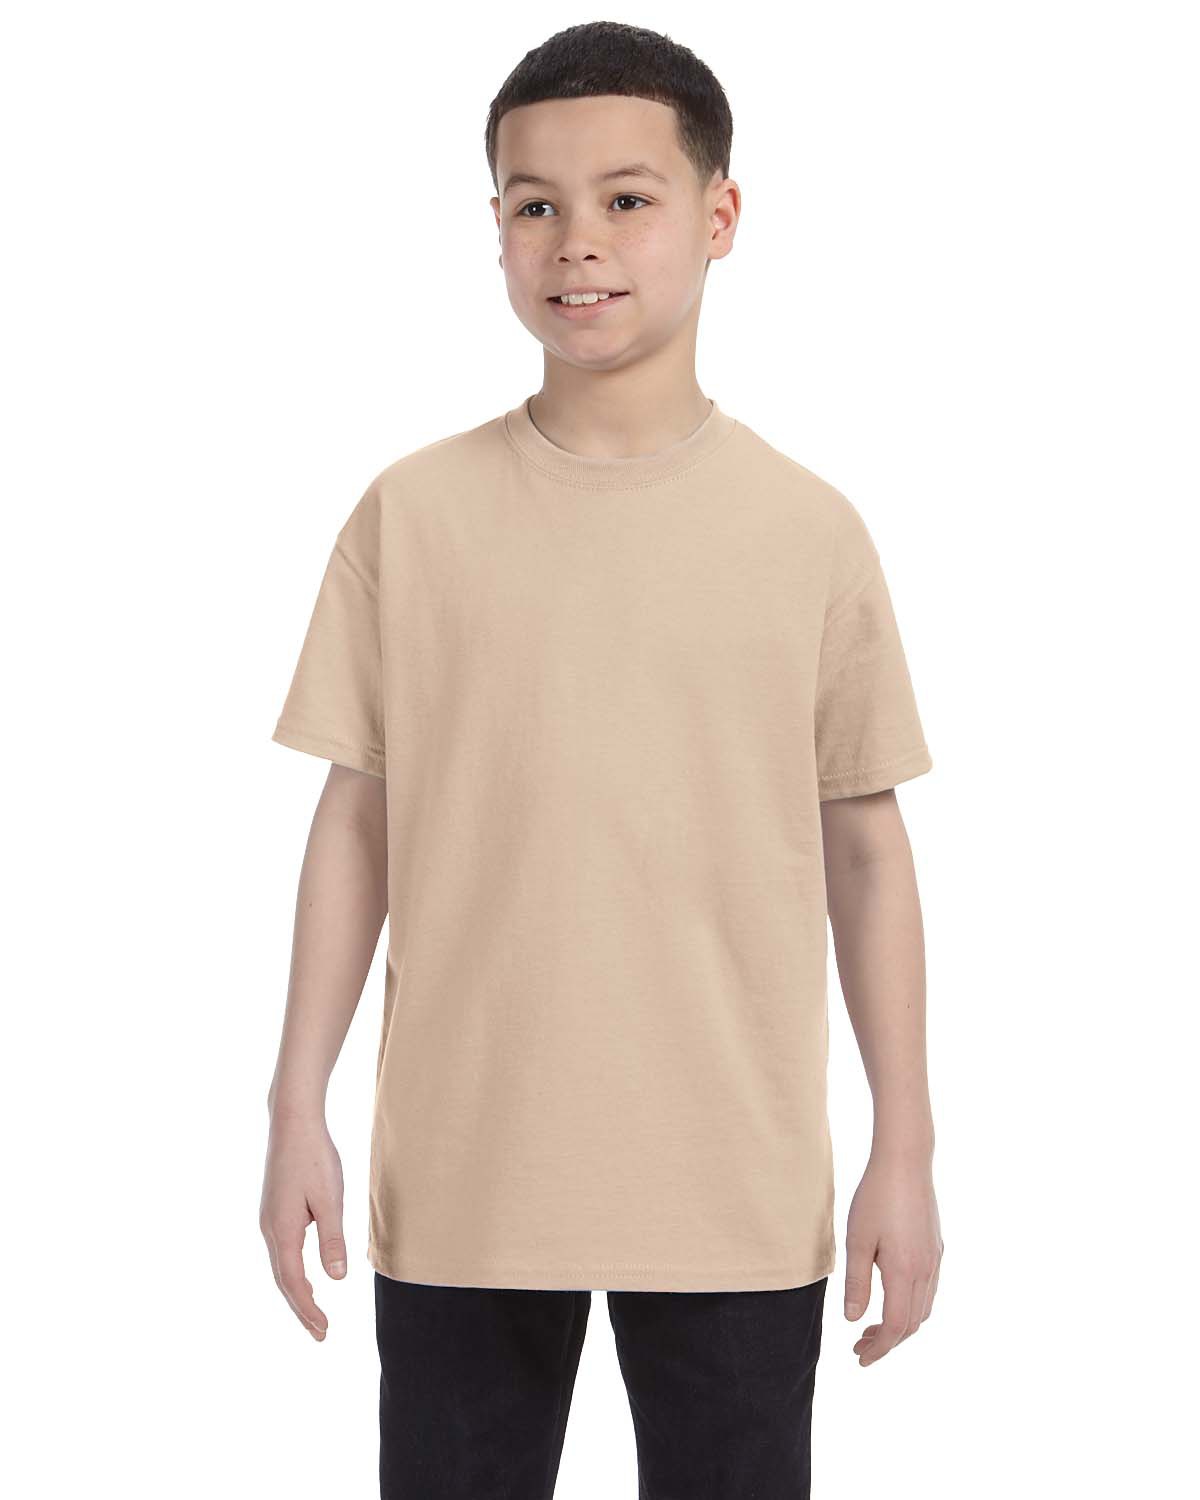 Gildan Brown Kids Plain T Shirt School Uniform Girls Children High Quality Tops 